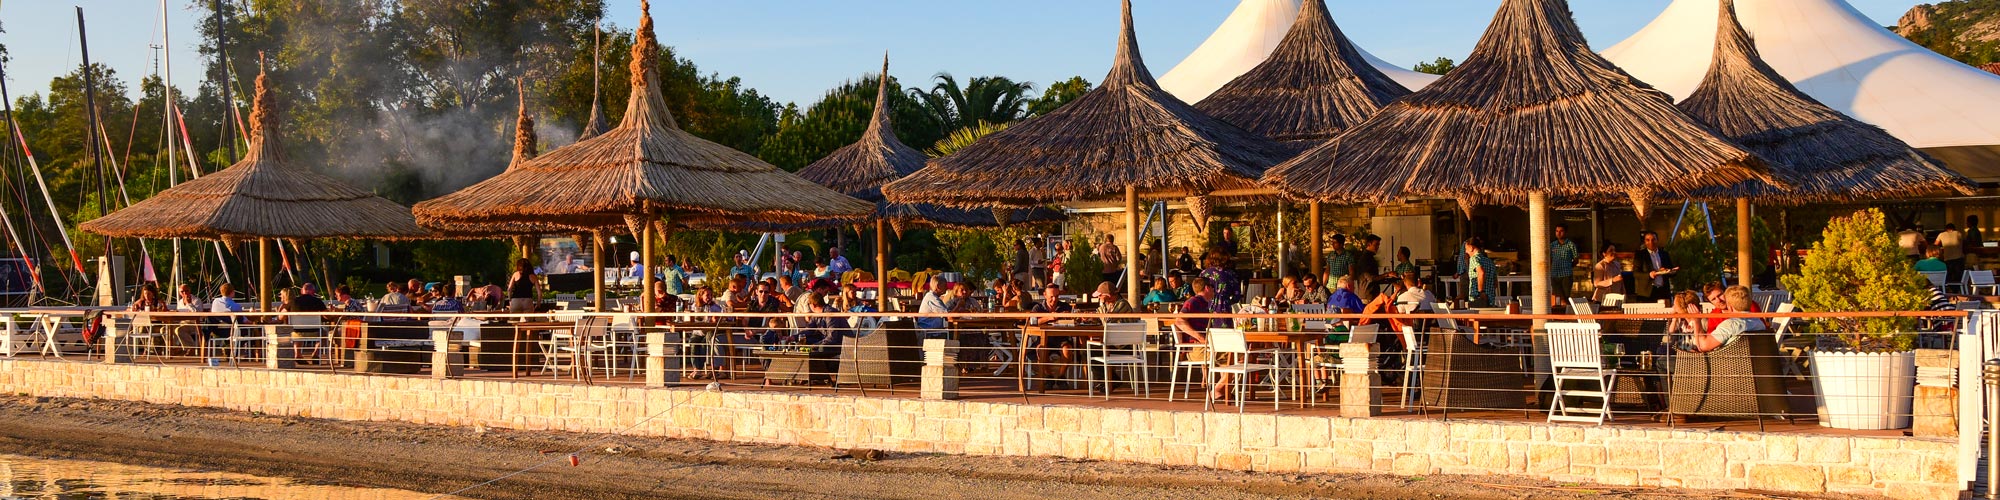 Phokaia beach restaurant